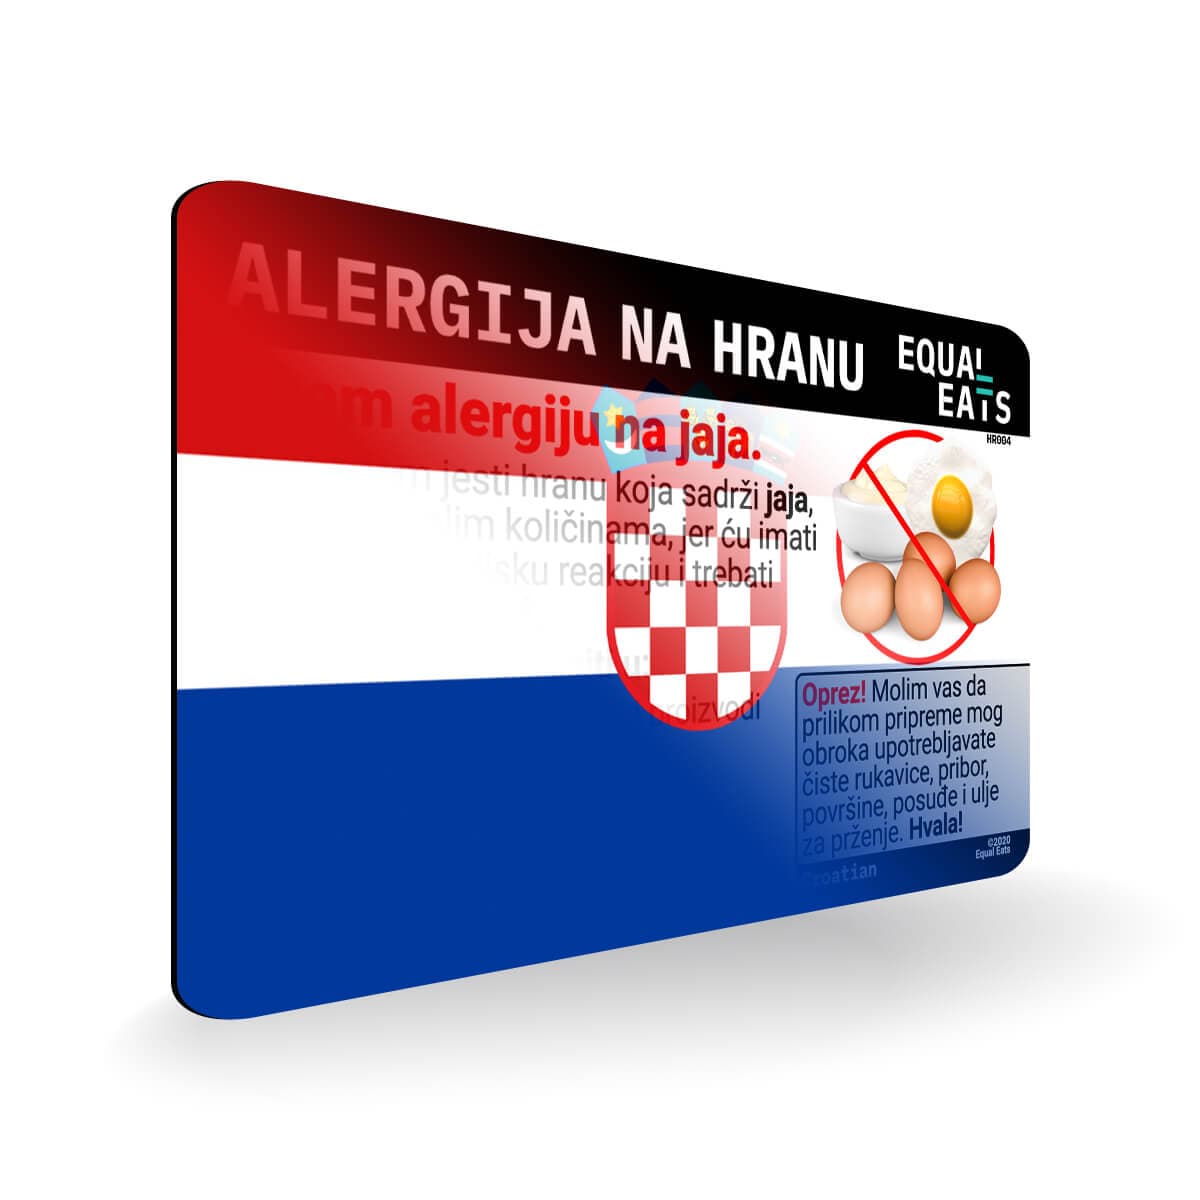 Egg Allergy in Croatian. Egg Allergy Card for Croatia